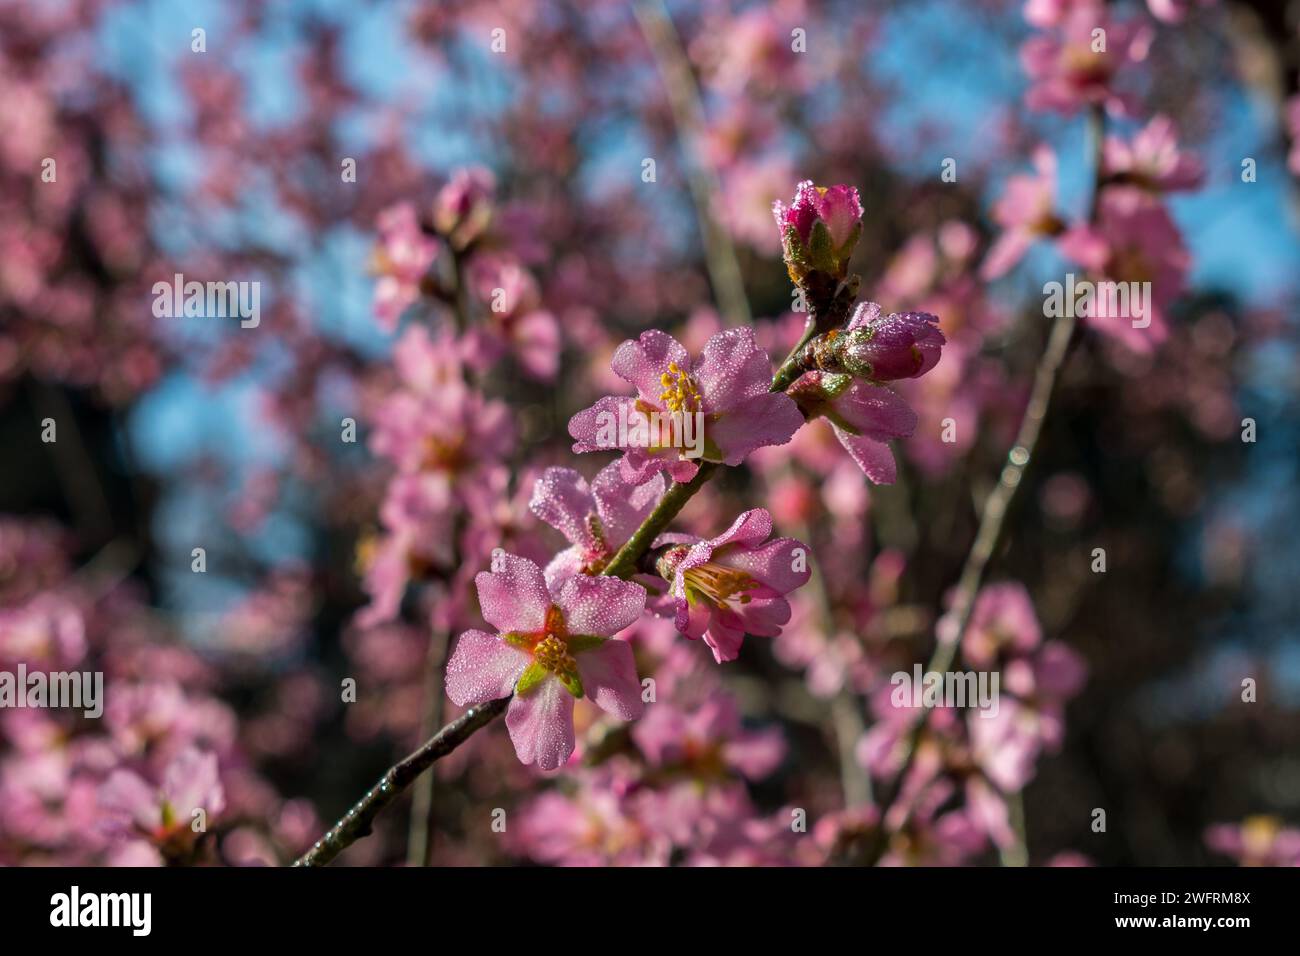 Il mandorlo con fiori rosa e bianchi sbocciano durante la giornata di sole Foto Stock